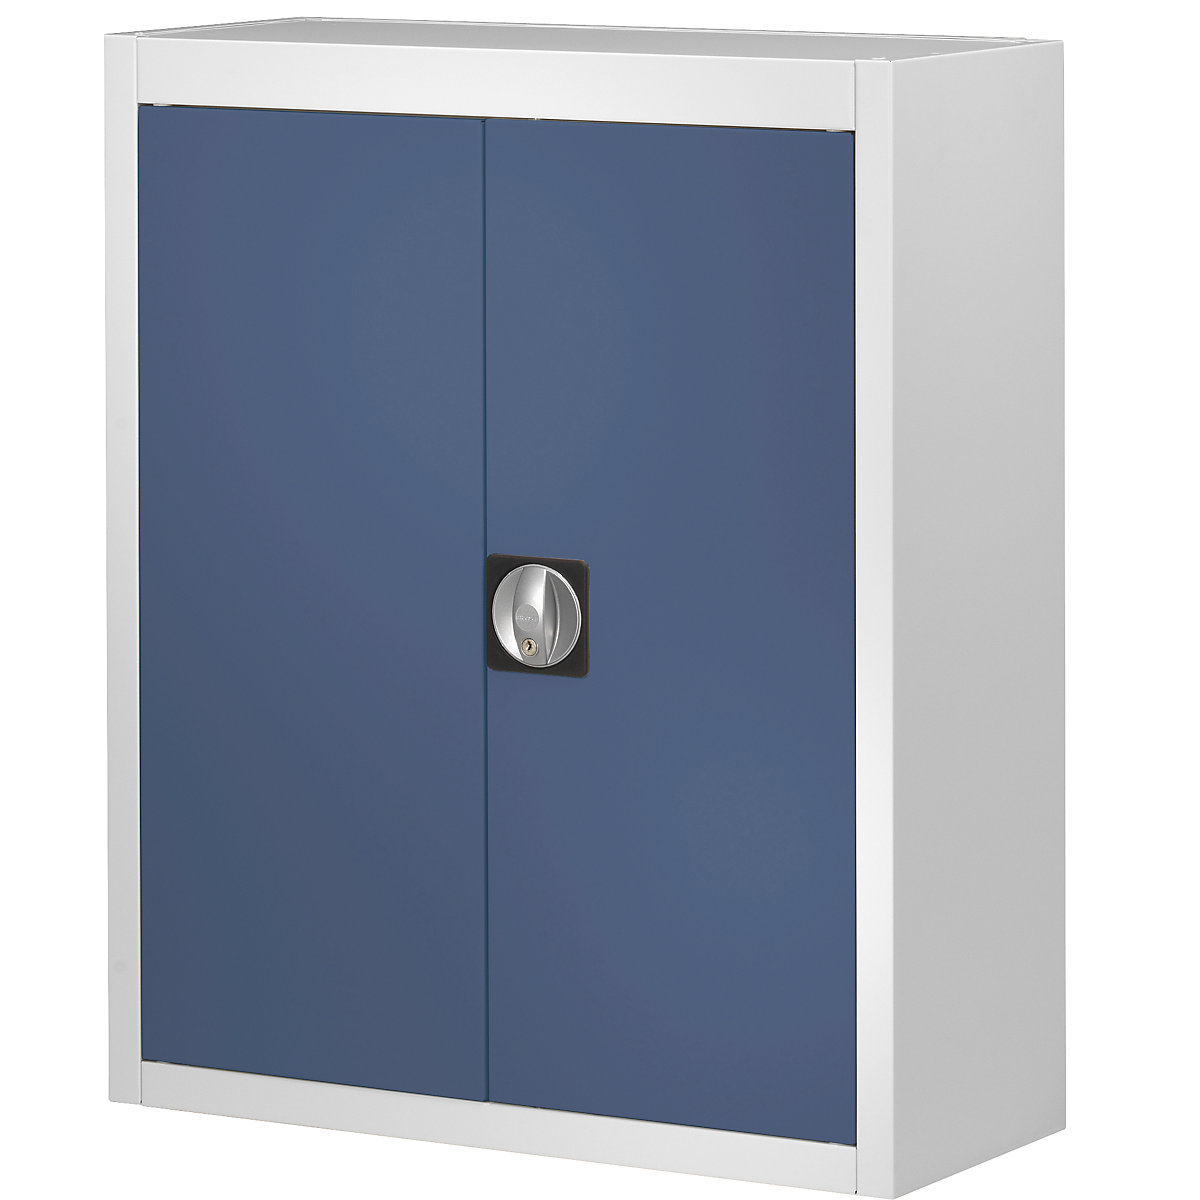 Rekesztároló szekrény, nyitott tárolódobozok nélkül – mauser, ma x szé x mé 820 x 680 x 280 mm, kétszínű, szürke váz, kék ajtó, 3 db-tól-6